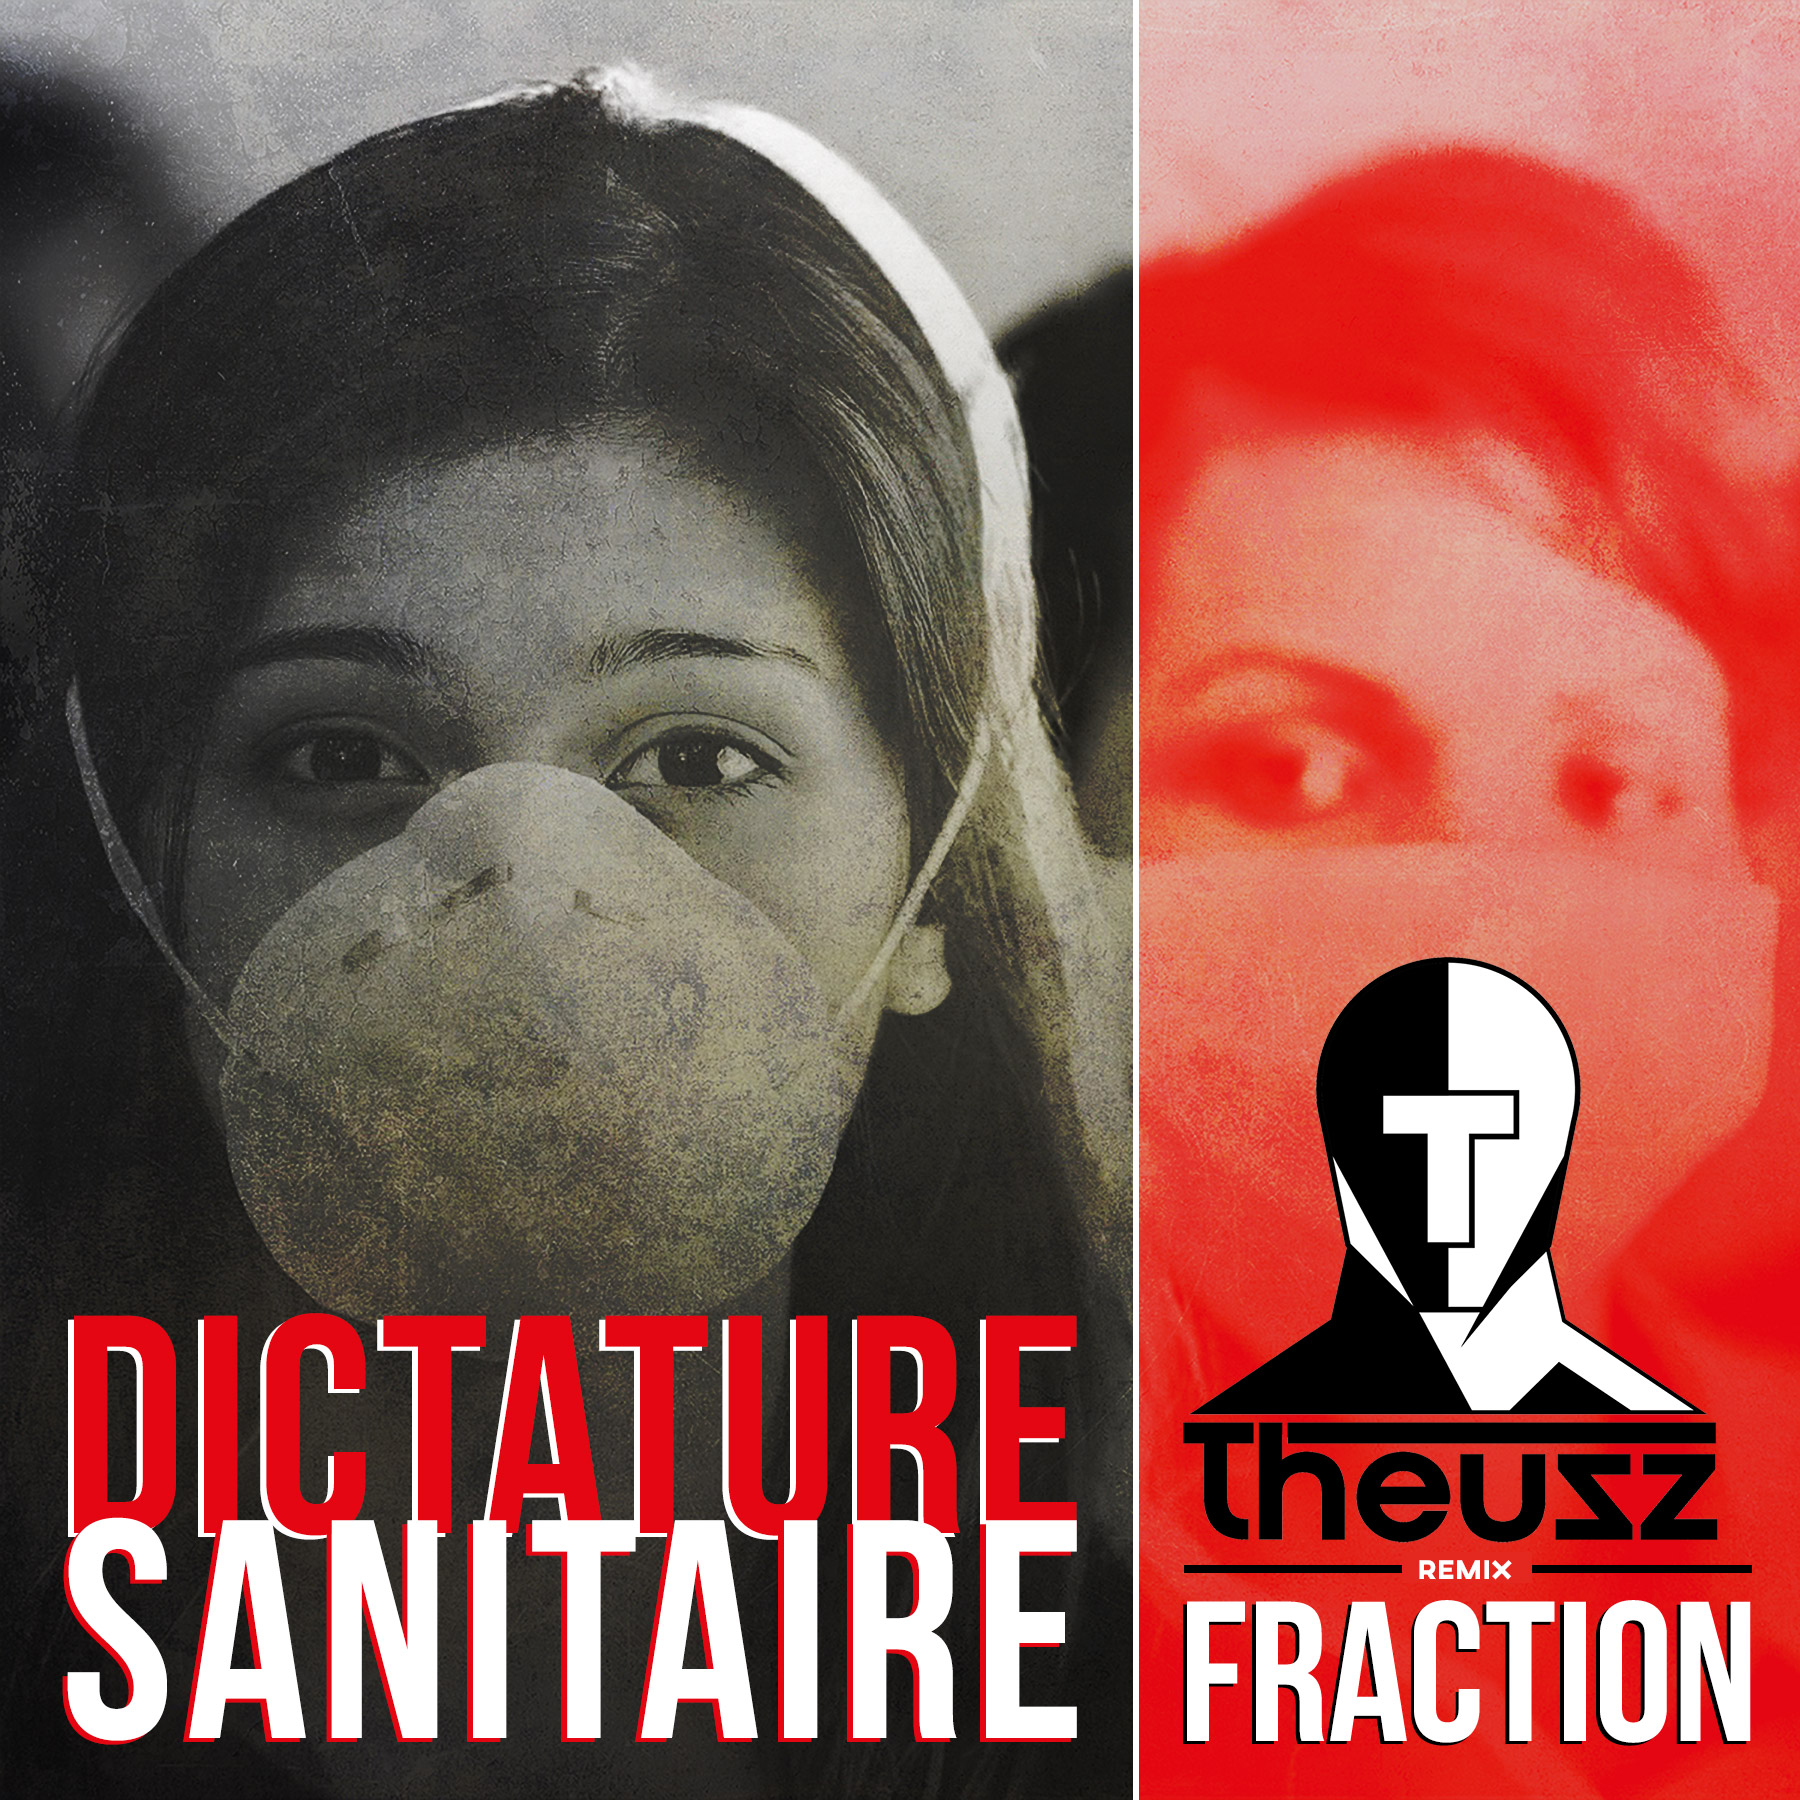 FRACTION "Dictature sanitaire" (Remix par THEUSZ)